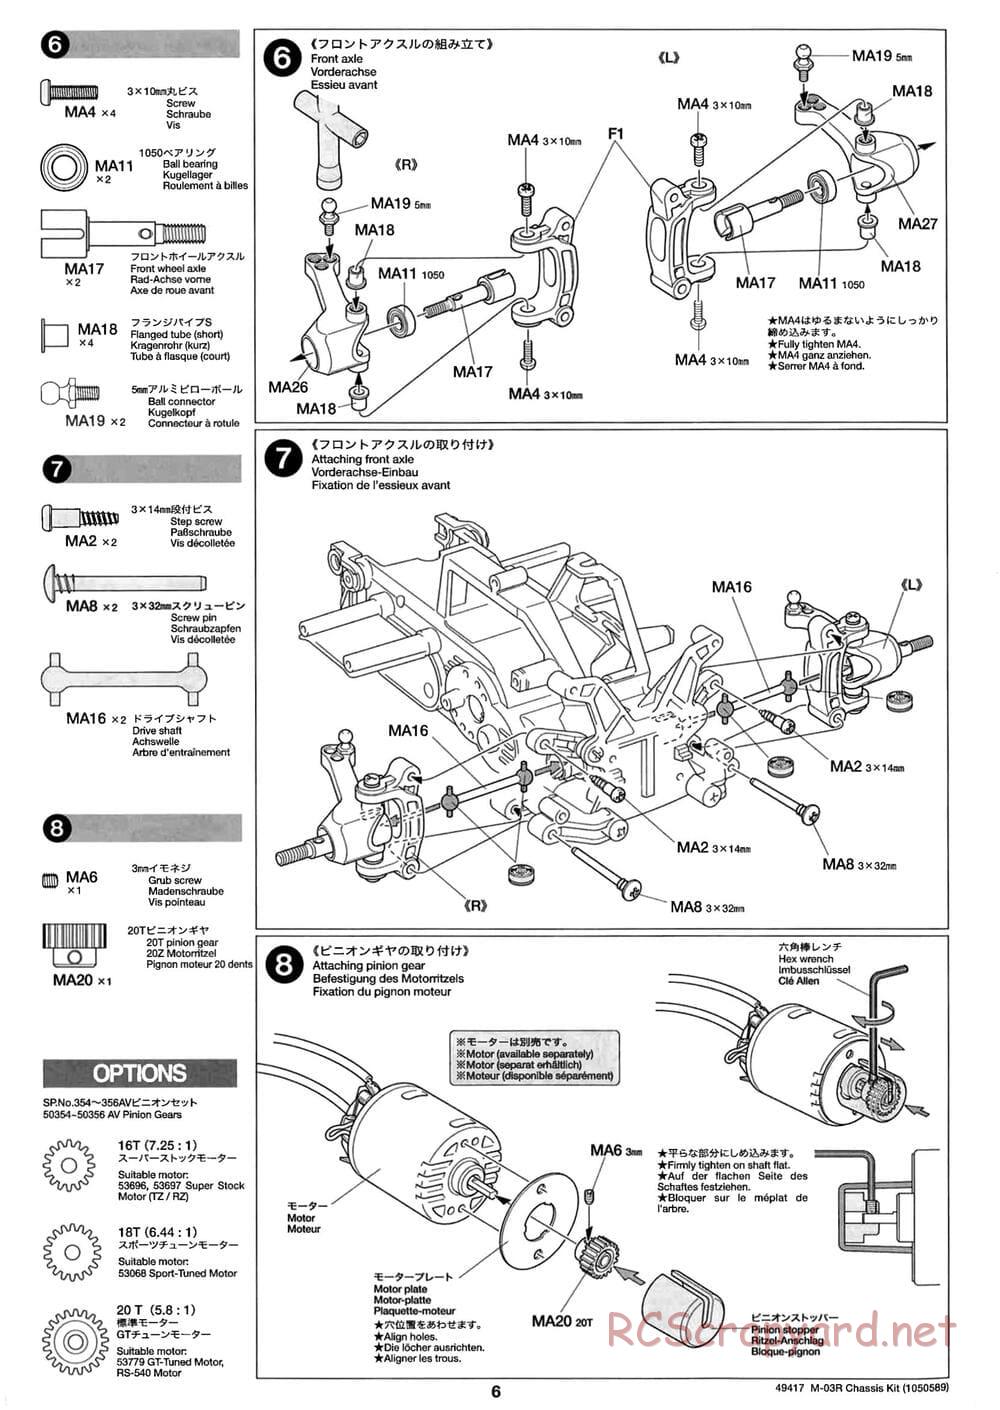 Tamiya - M-03R Chassis - Manual - Page 6